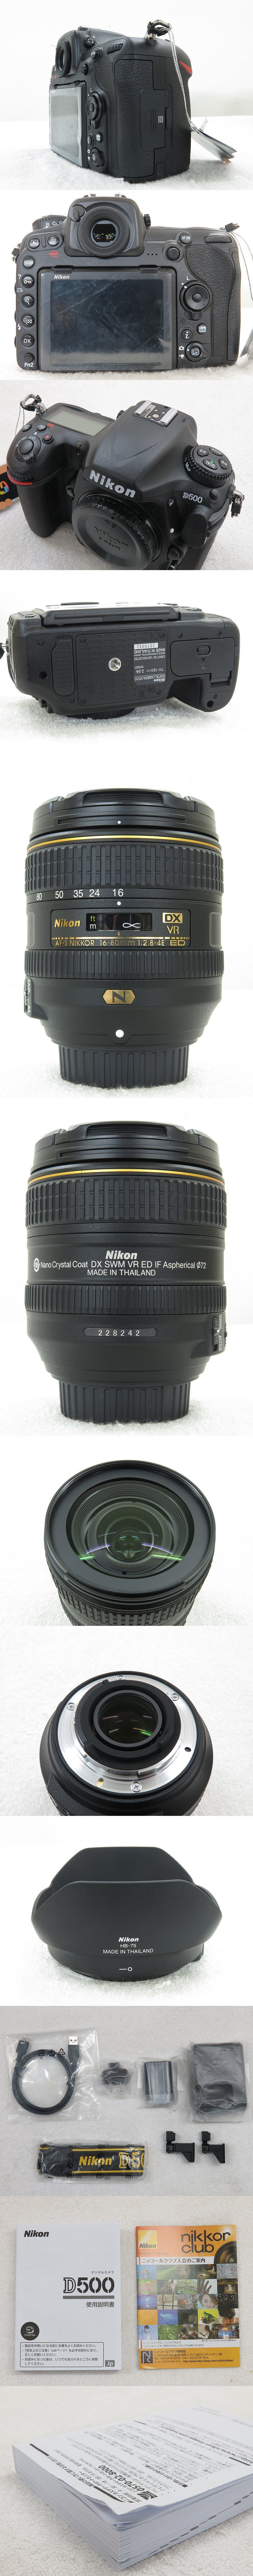 99511円 入荷中 Nikon ニコン D500 16-80VR レンズキット